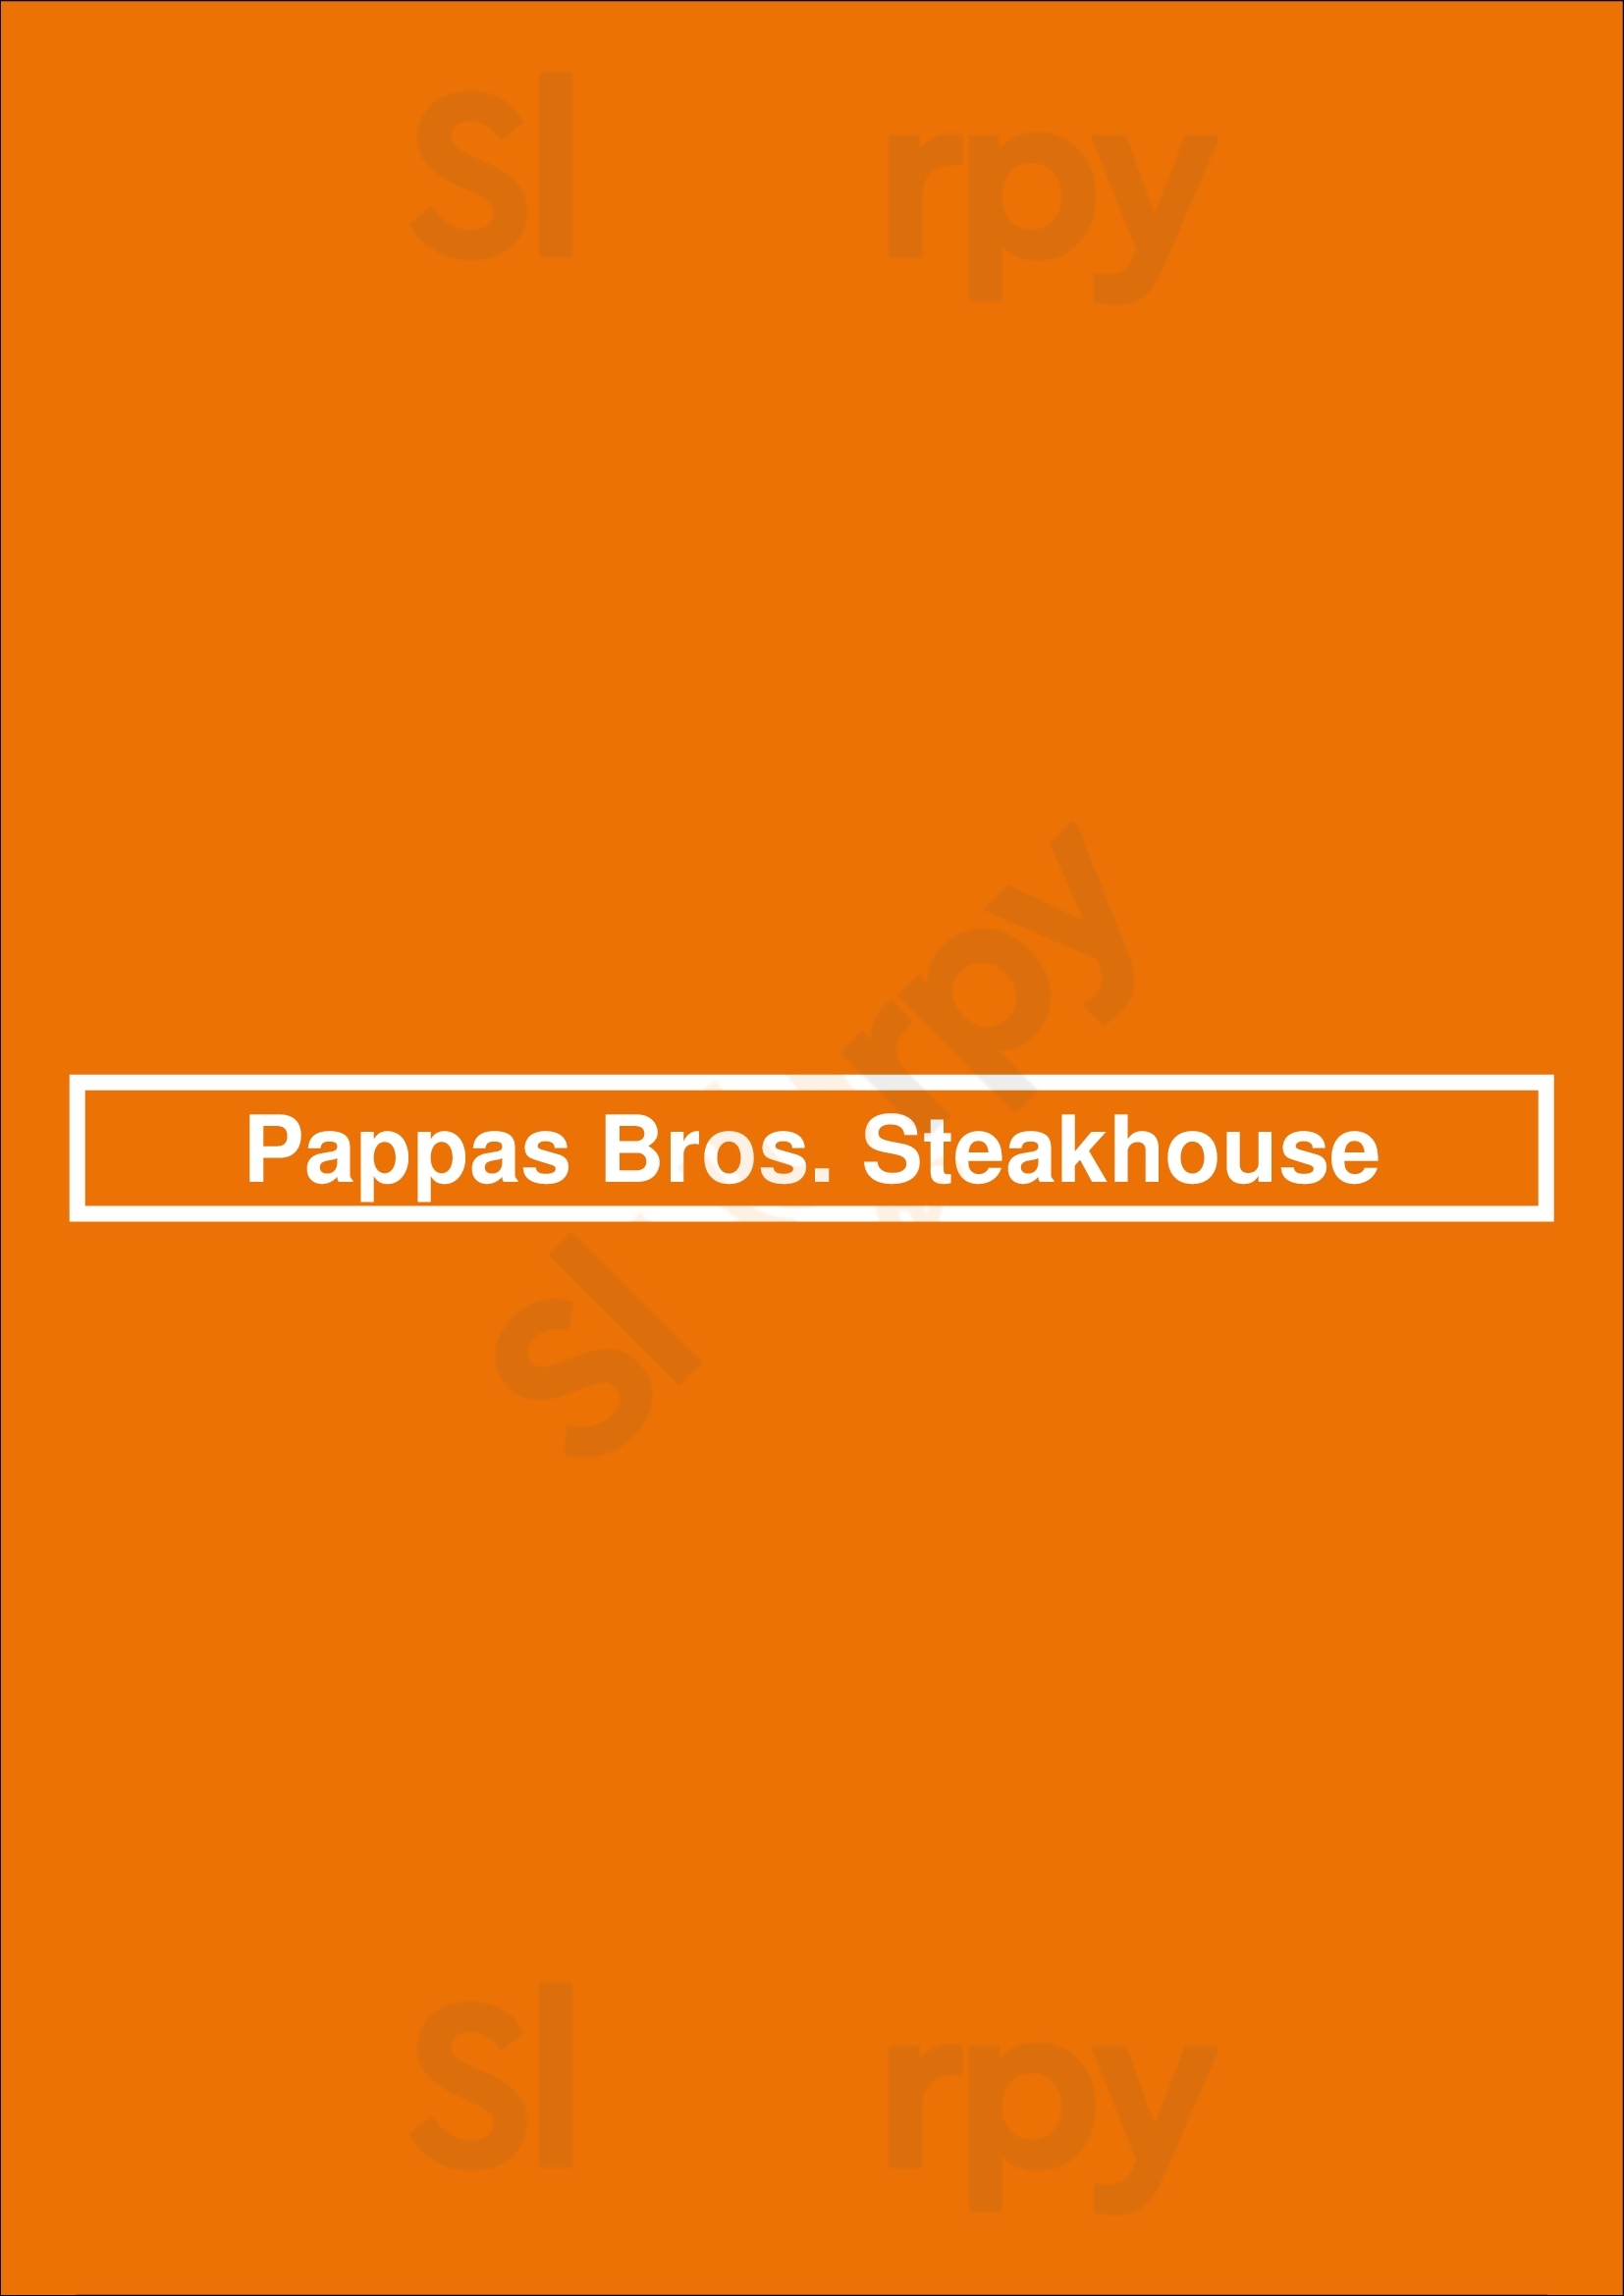 Pappas Bros. Steakhouse Houston Menu - 1